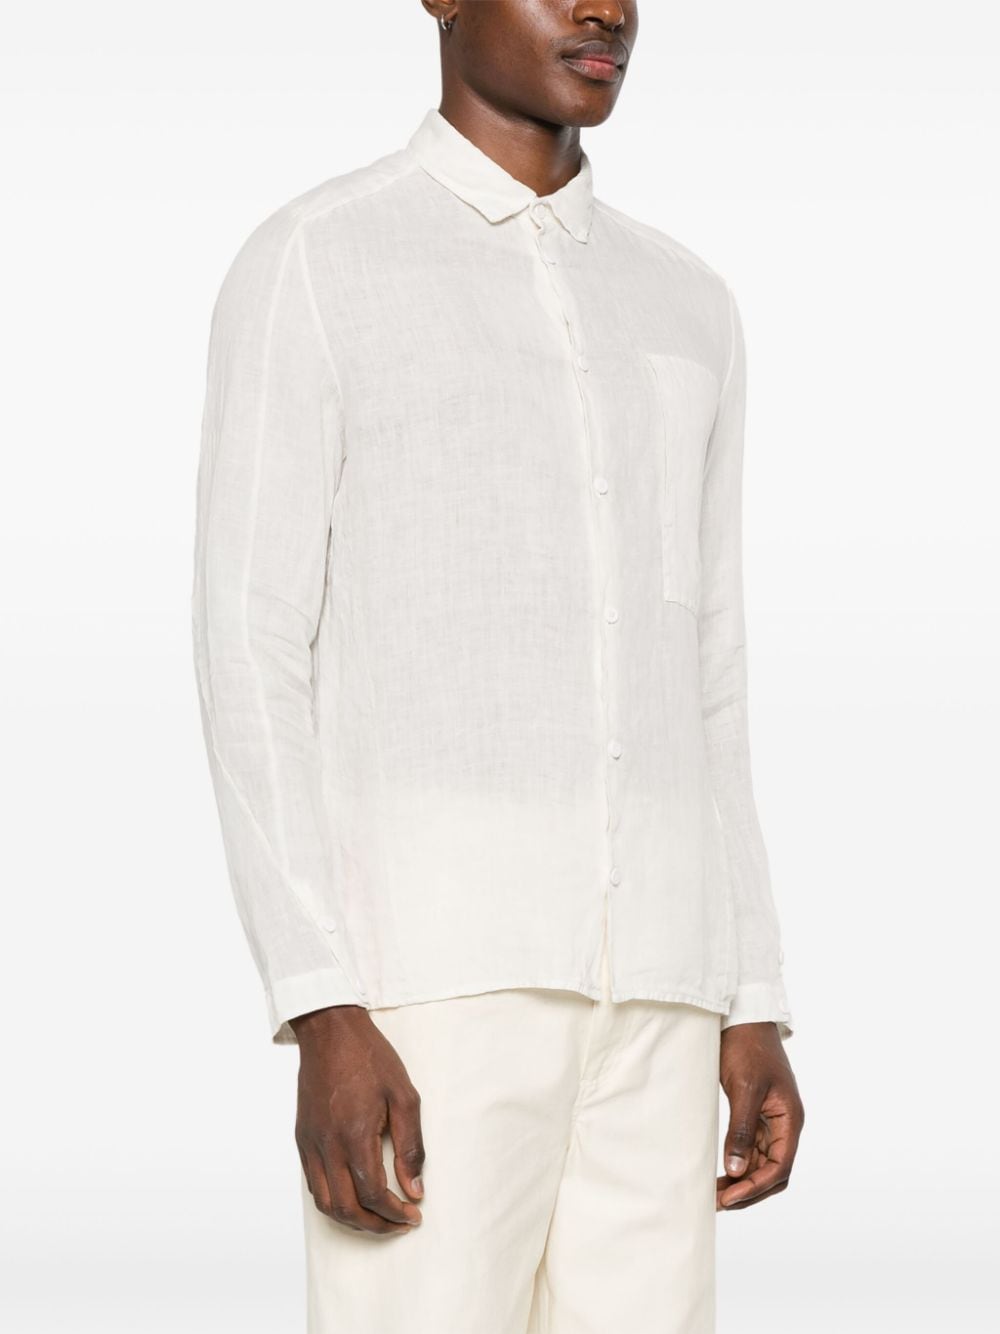 White long-sleeved linen shirt